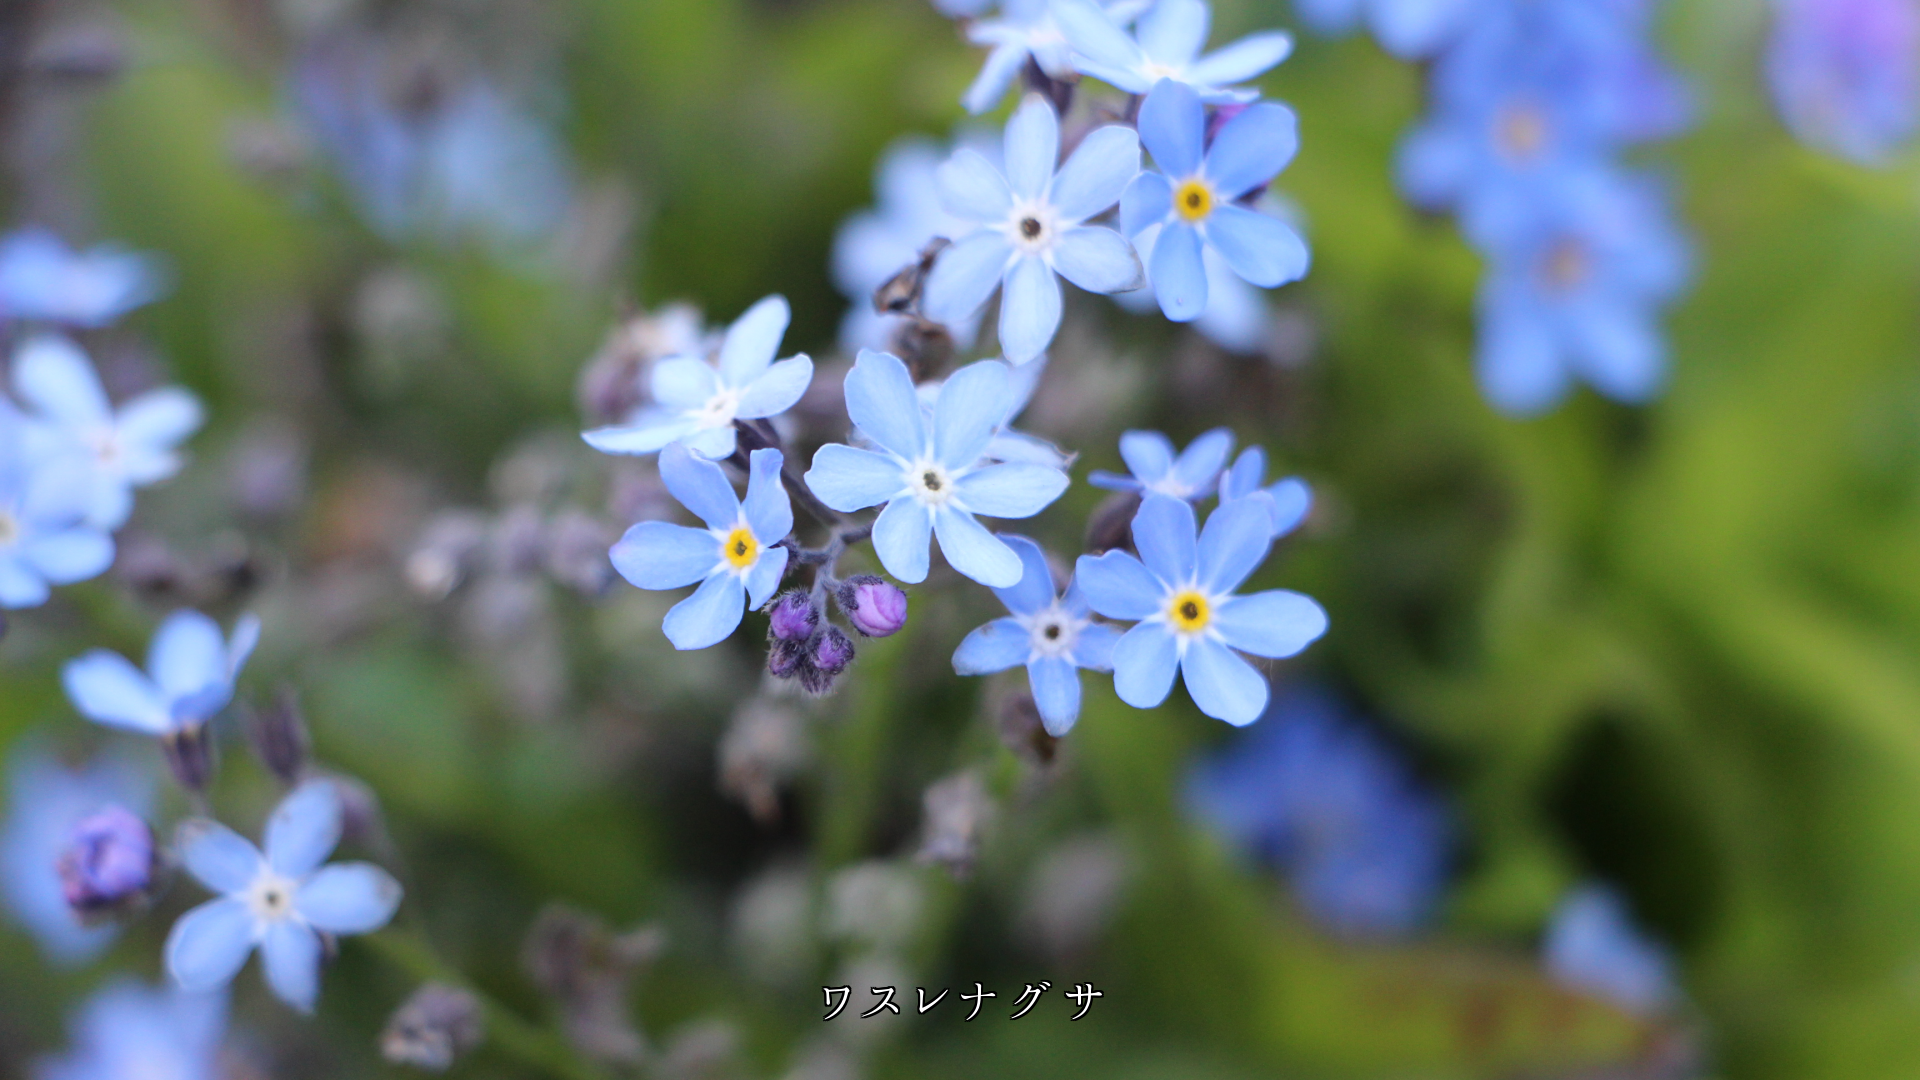 見つめていると　何か忘れがたい　青や紫色の花たち  心が惹かれる